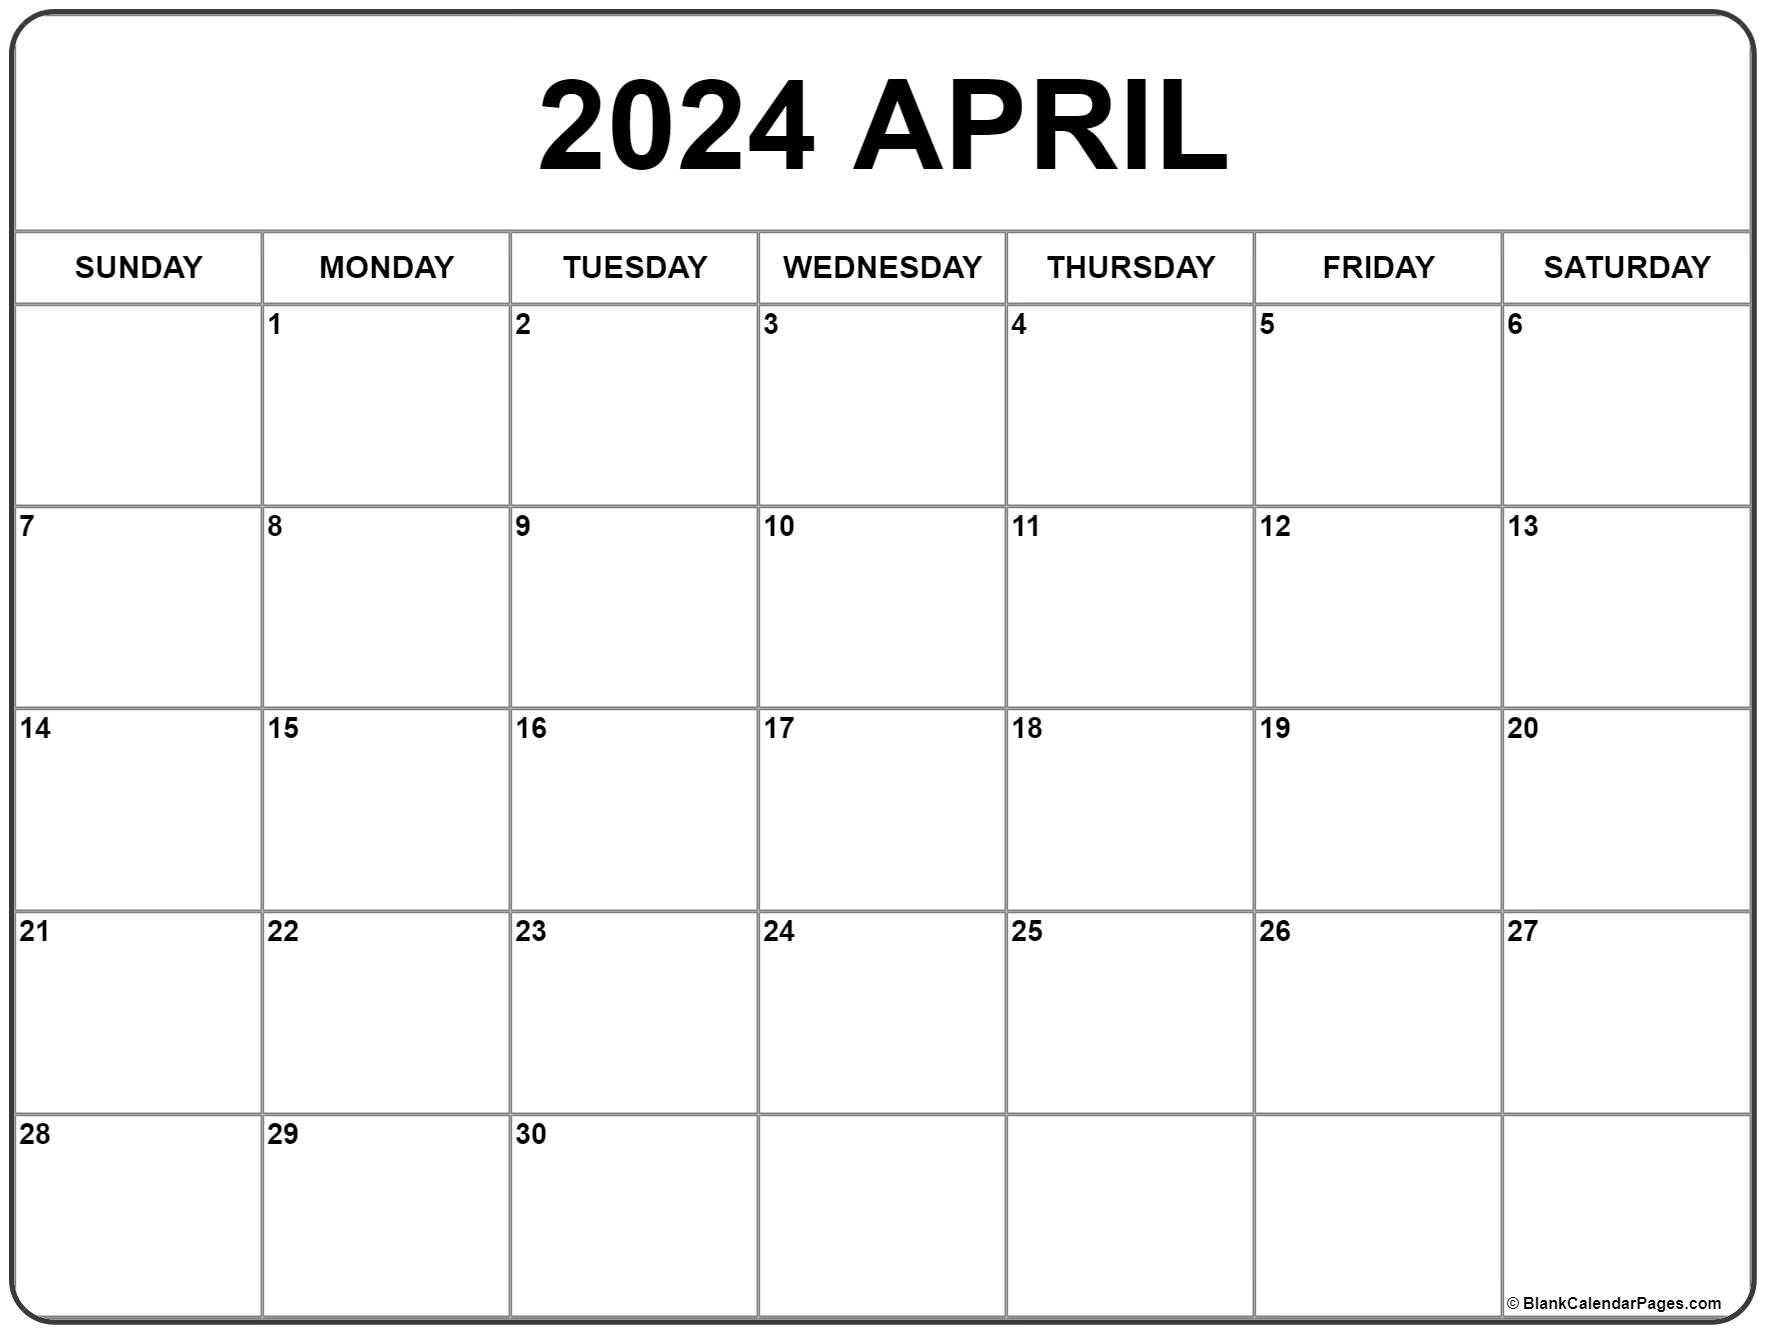 April 2024 Calendar | Free Printable Calendar inside Free Printable Blank Calendar April 2024